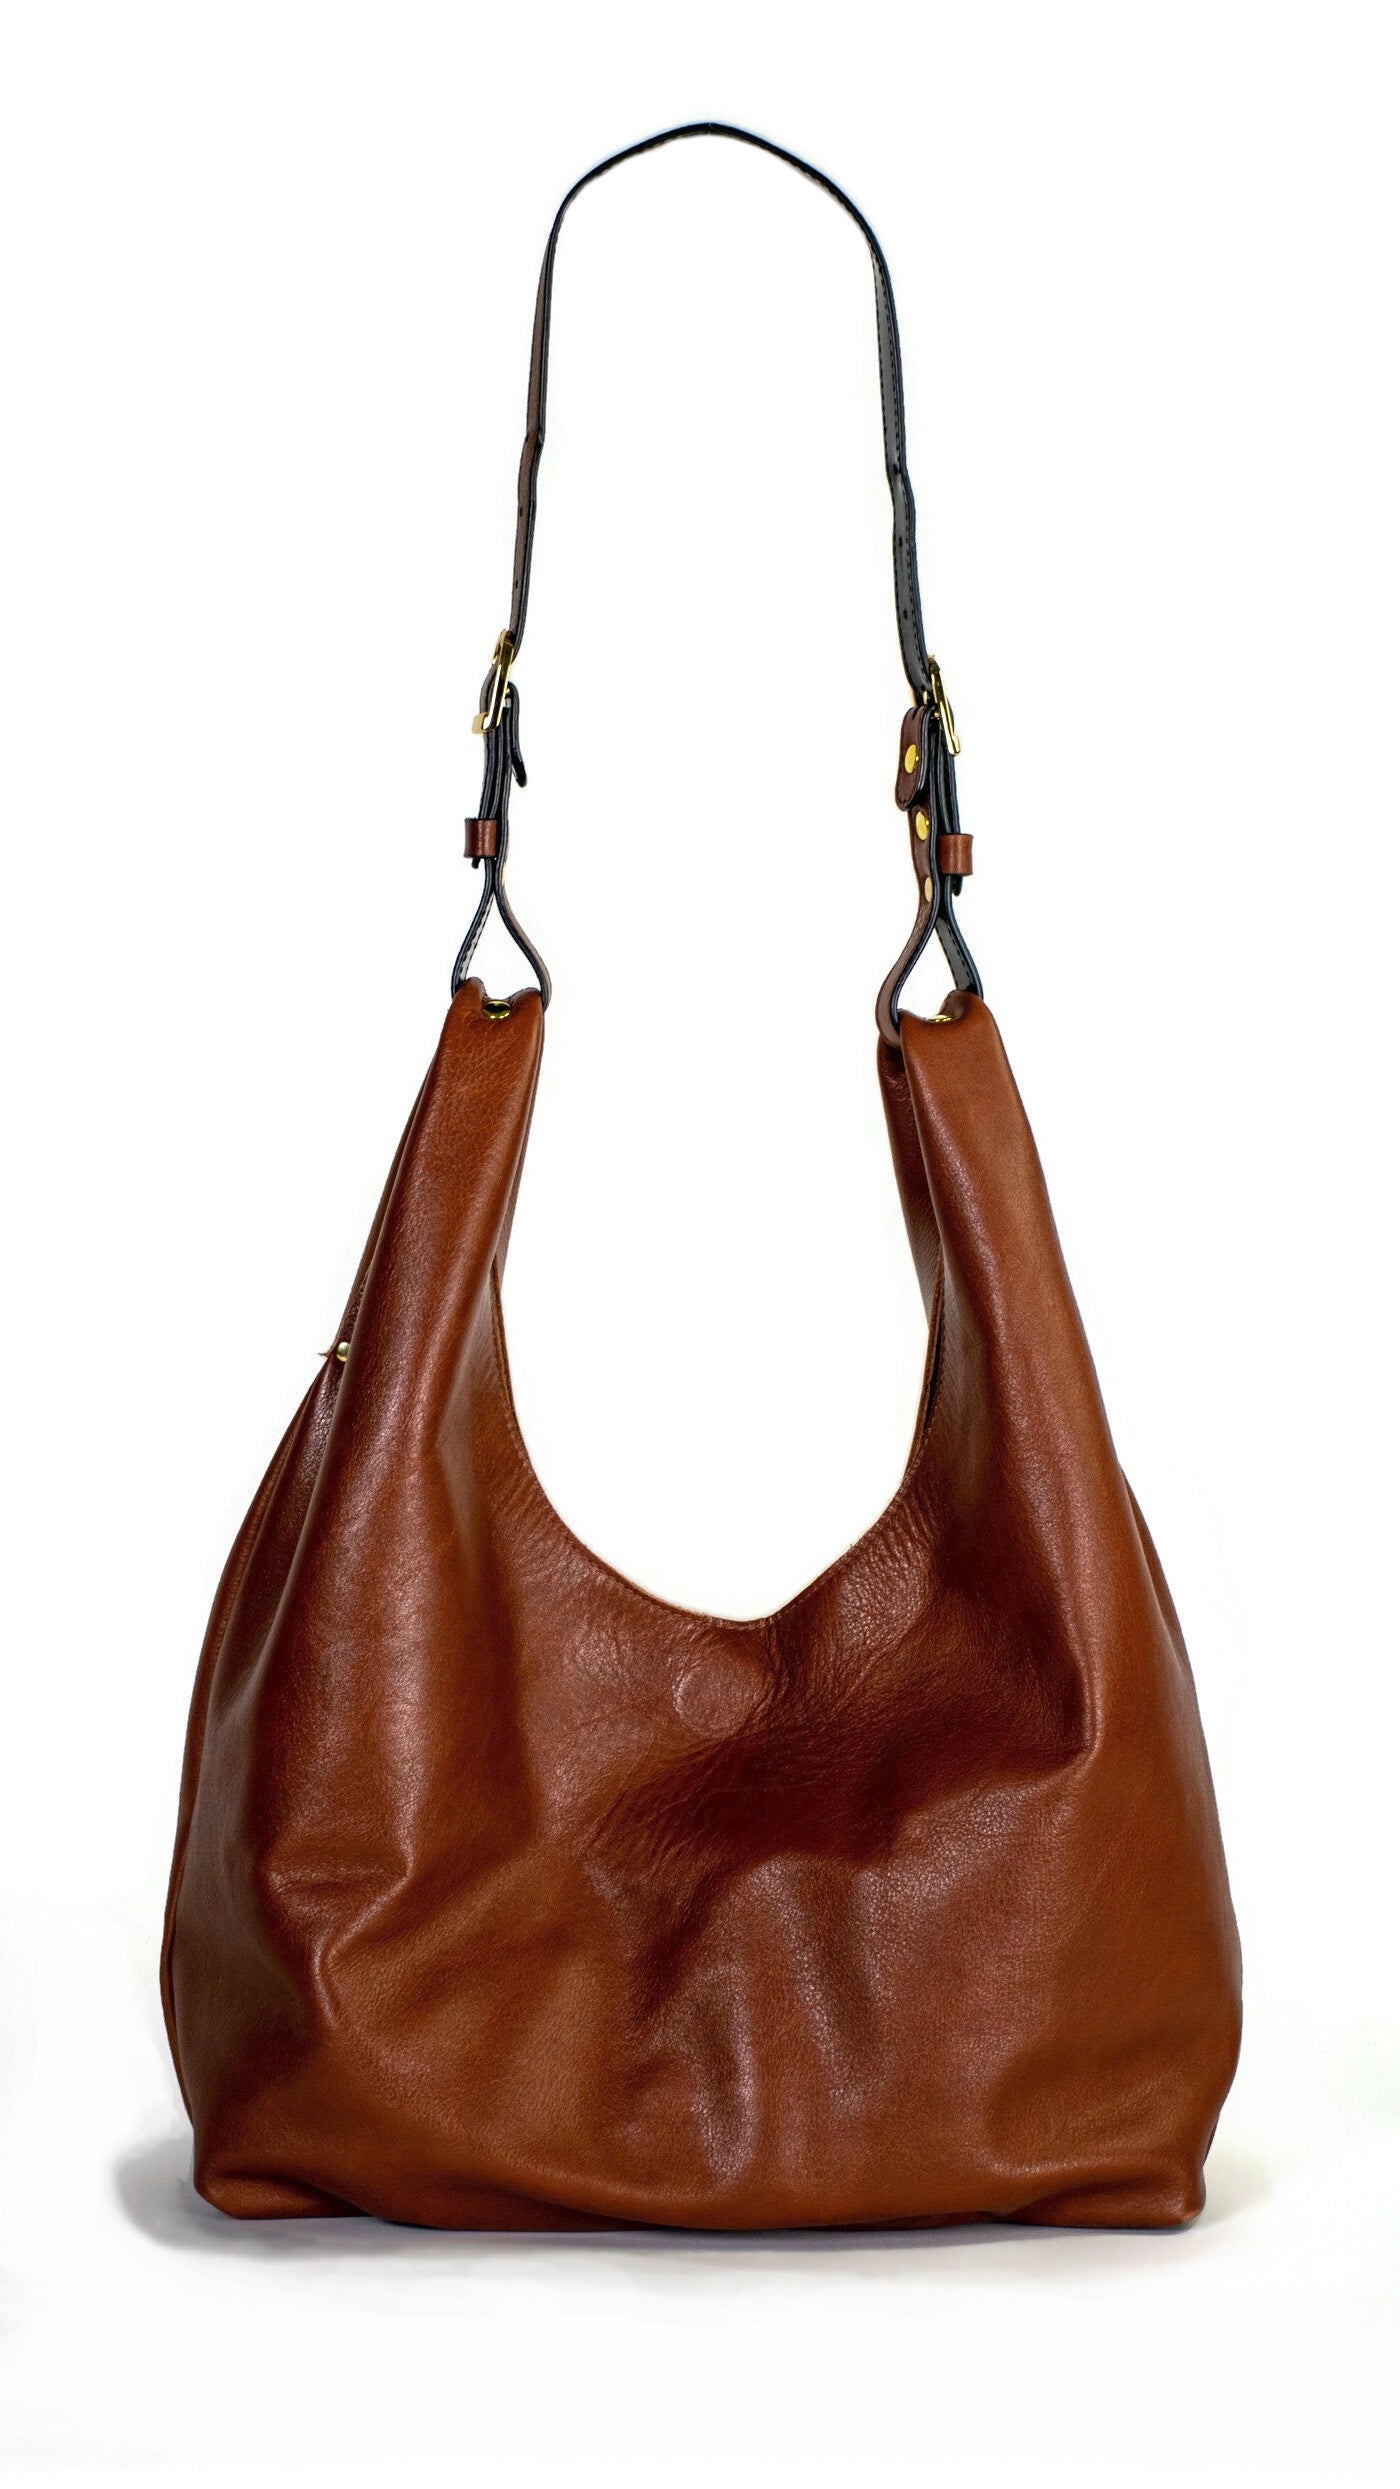 Jena Buckle Hobo Bag : Smooth Cognac Leather